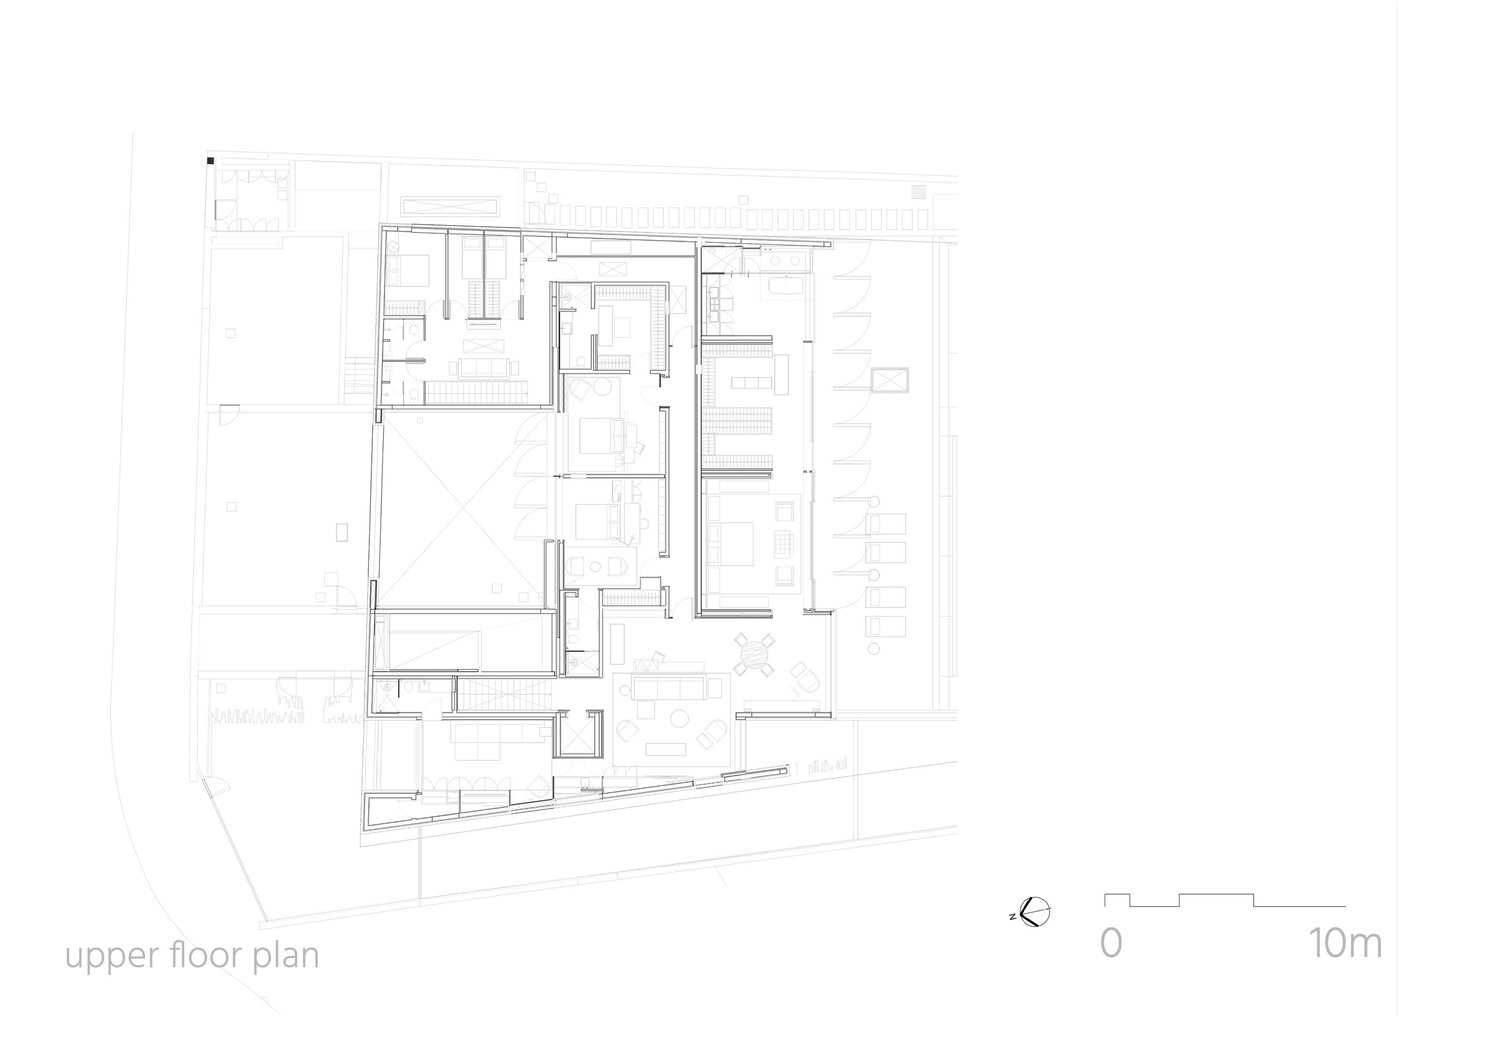 Upper floor plan | Studio Arthur Casas